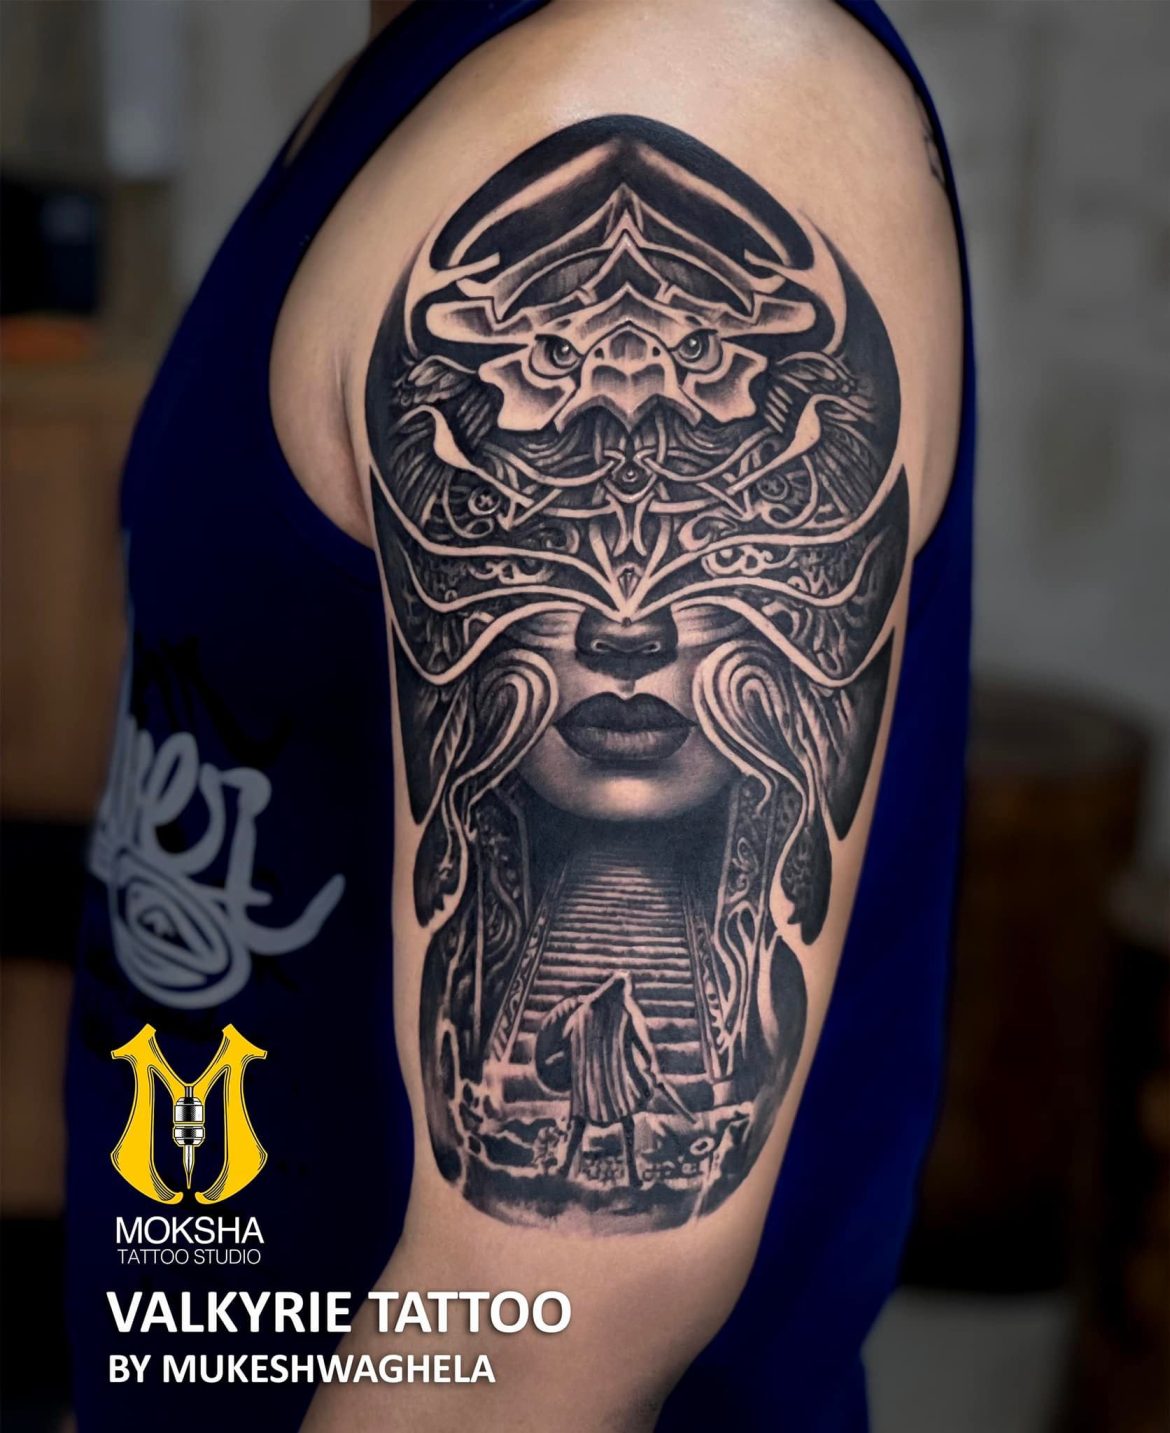 Tattoo uploaded by Angel Tattoo Goa - Best Tattoo Artist in Goa • Maori  Sleeve Tattoo By Sagar Dharoliya At Angel Tattoo Goa - Best Tattoo Artist  in Goa - Best Tattoo